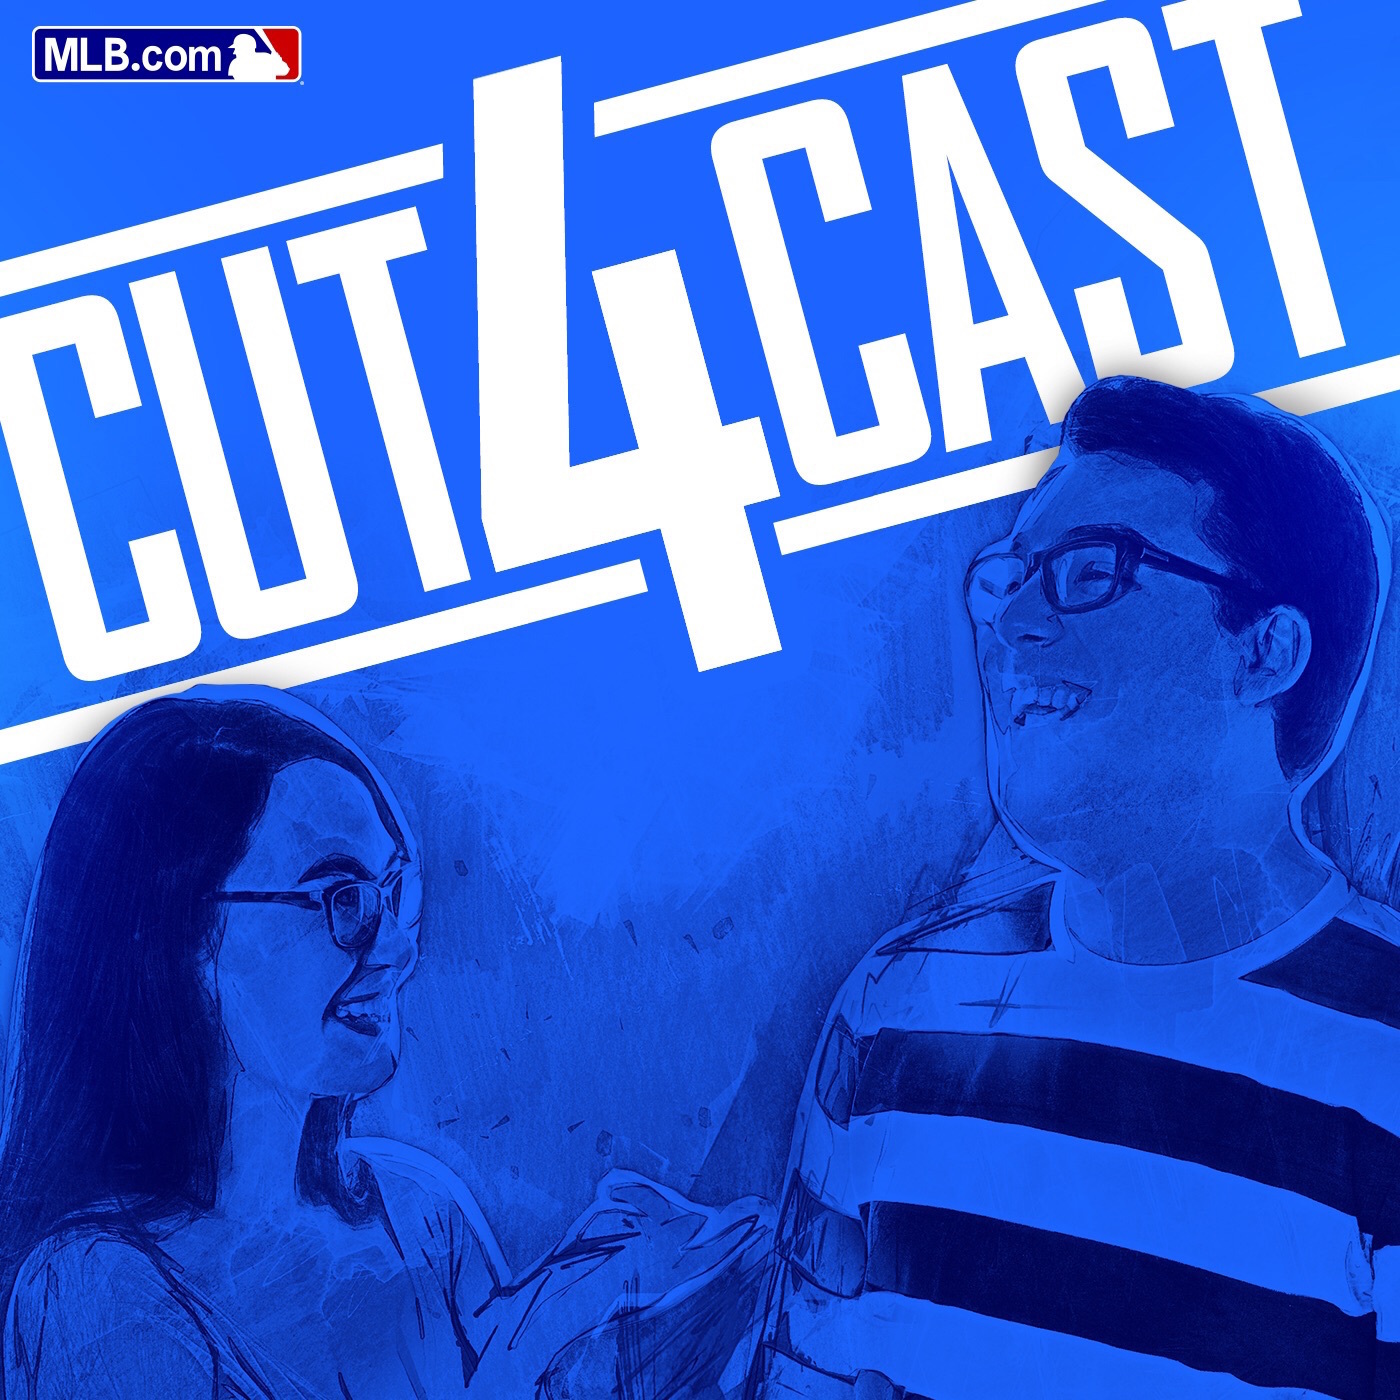 MLB.com Cut4cast